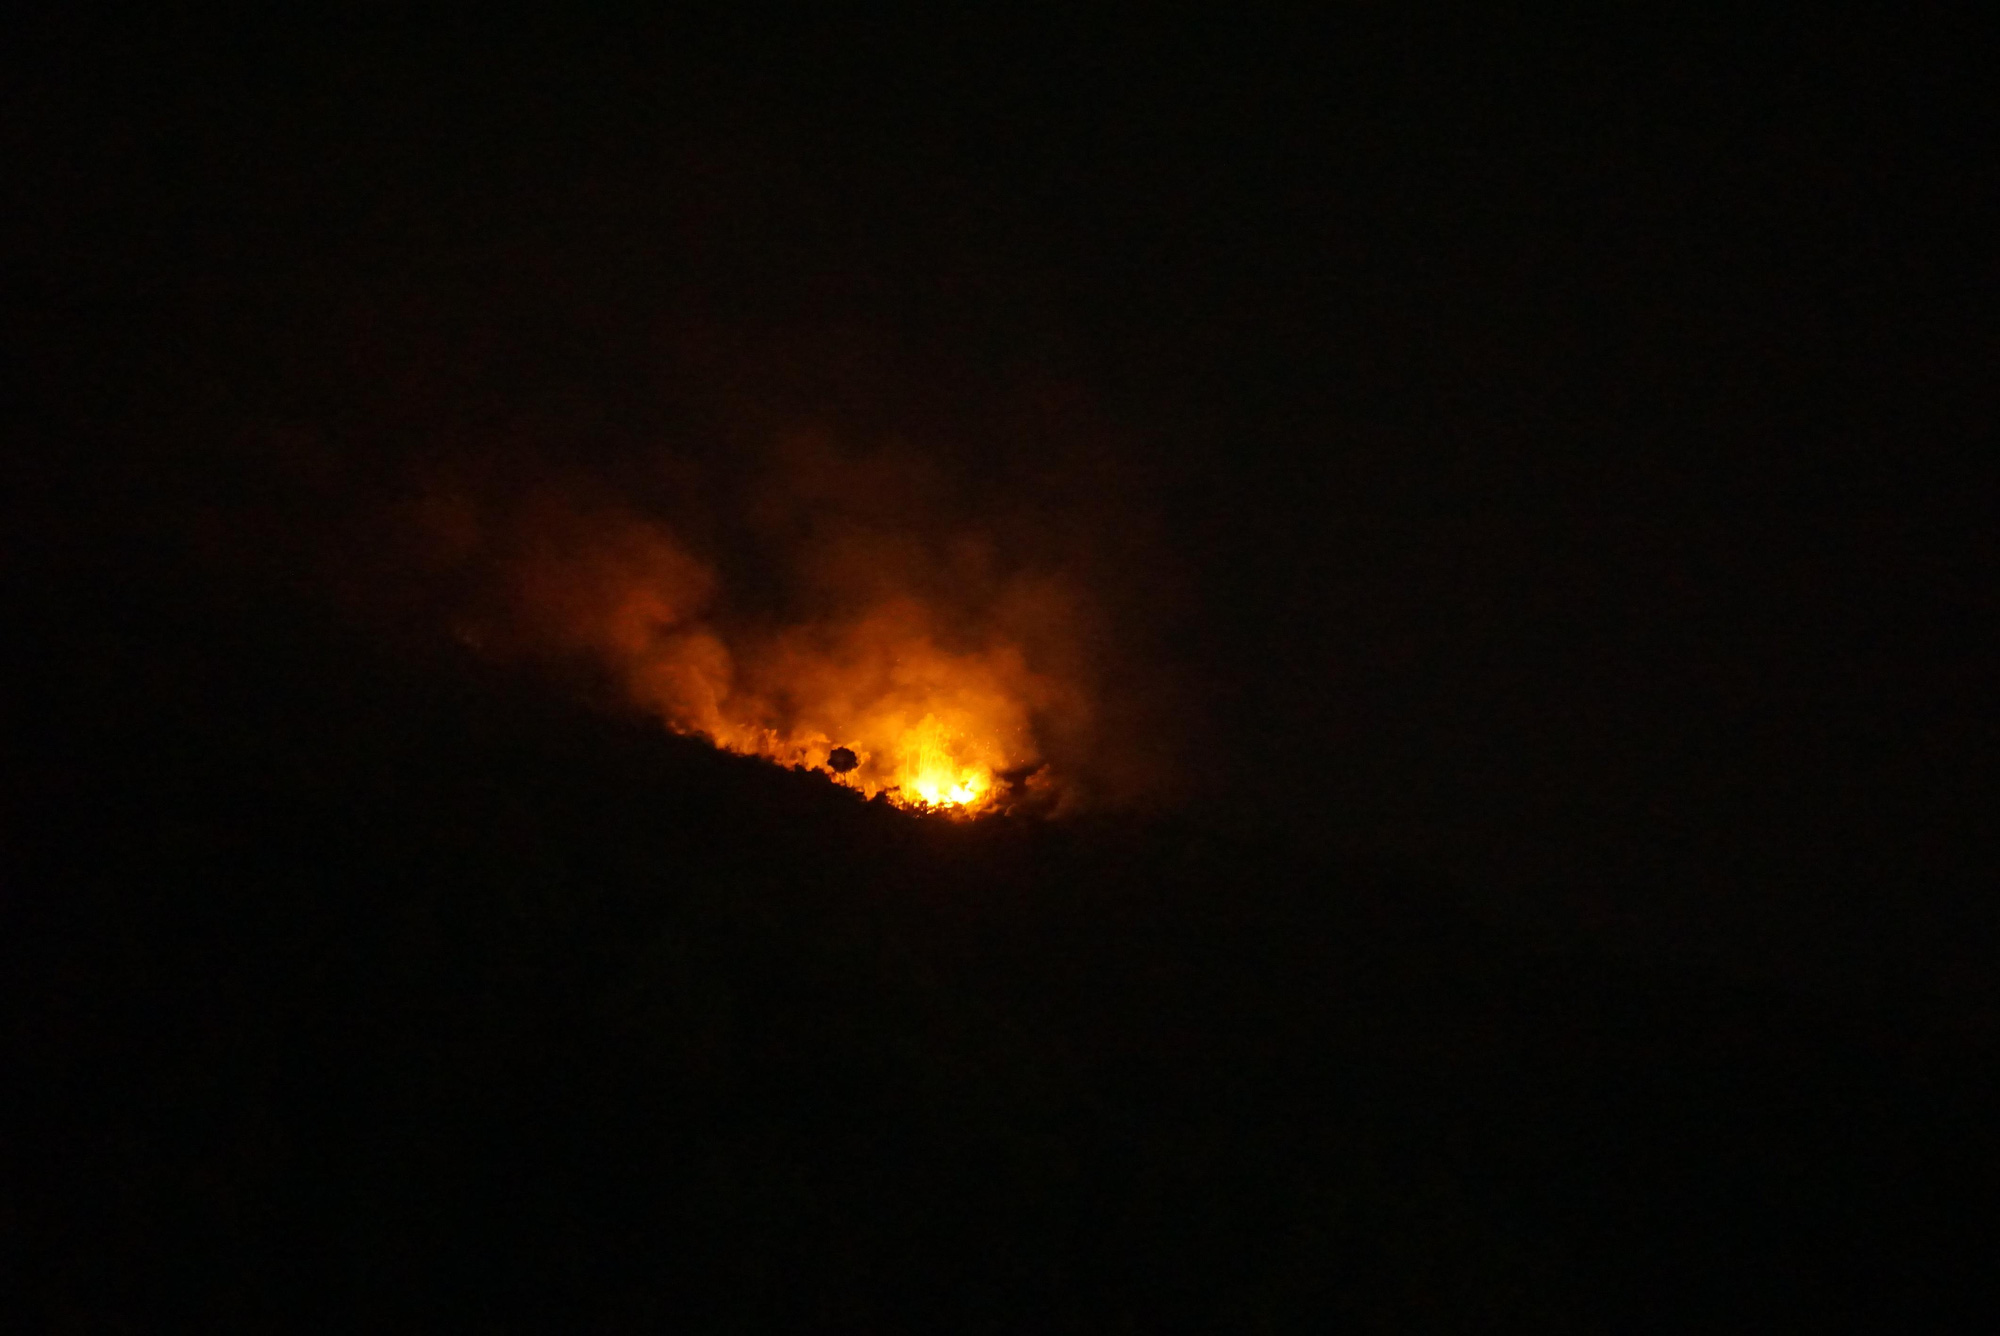 Đang cháy lớn tại đỉnh núi Sọ ở Đà Nẵng, lực lượng chức năng chưa thể tiếp cận - Ảnh 1.